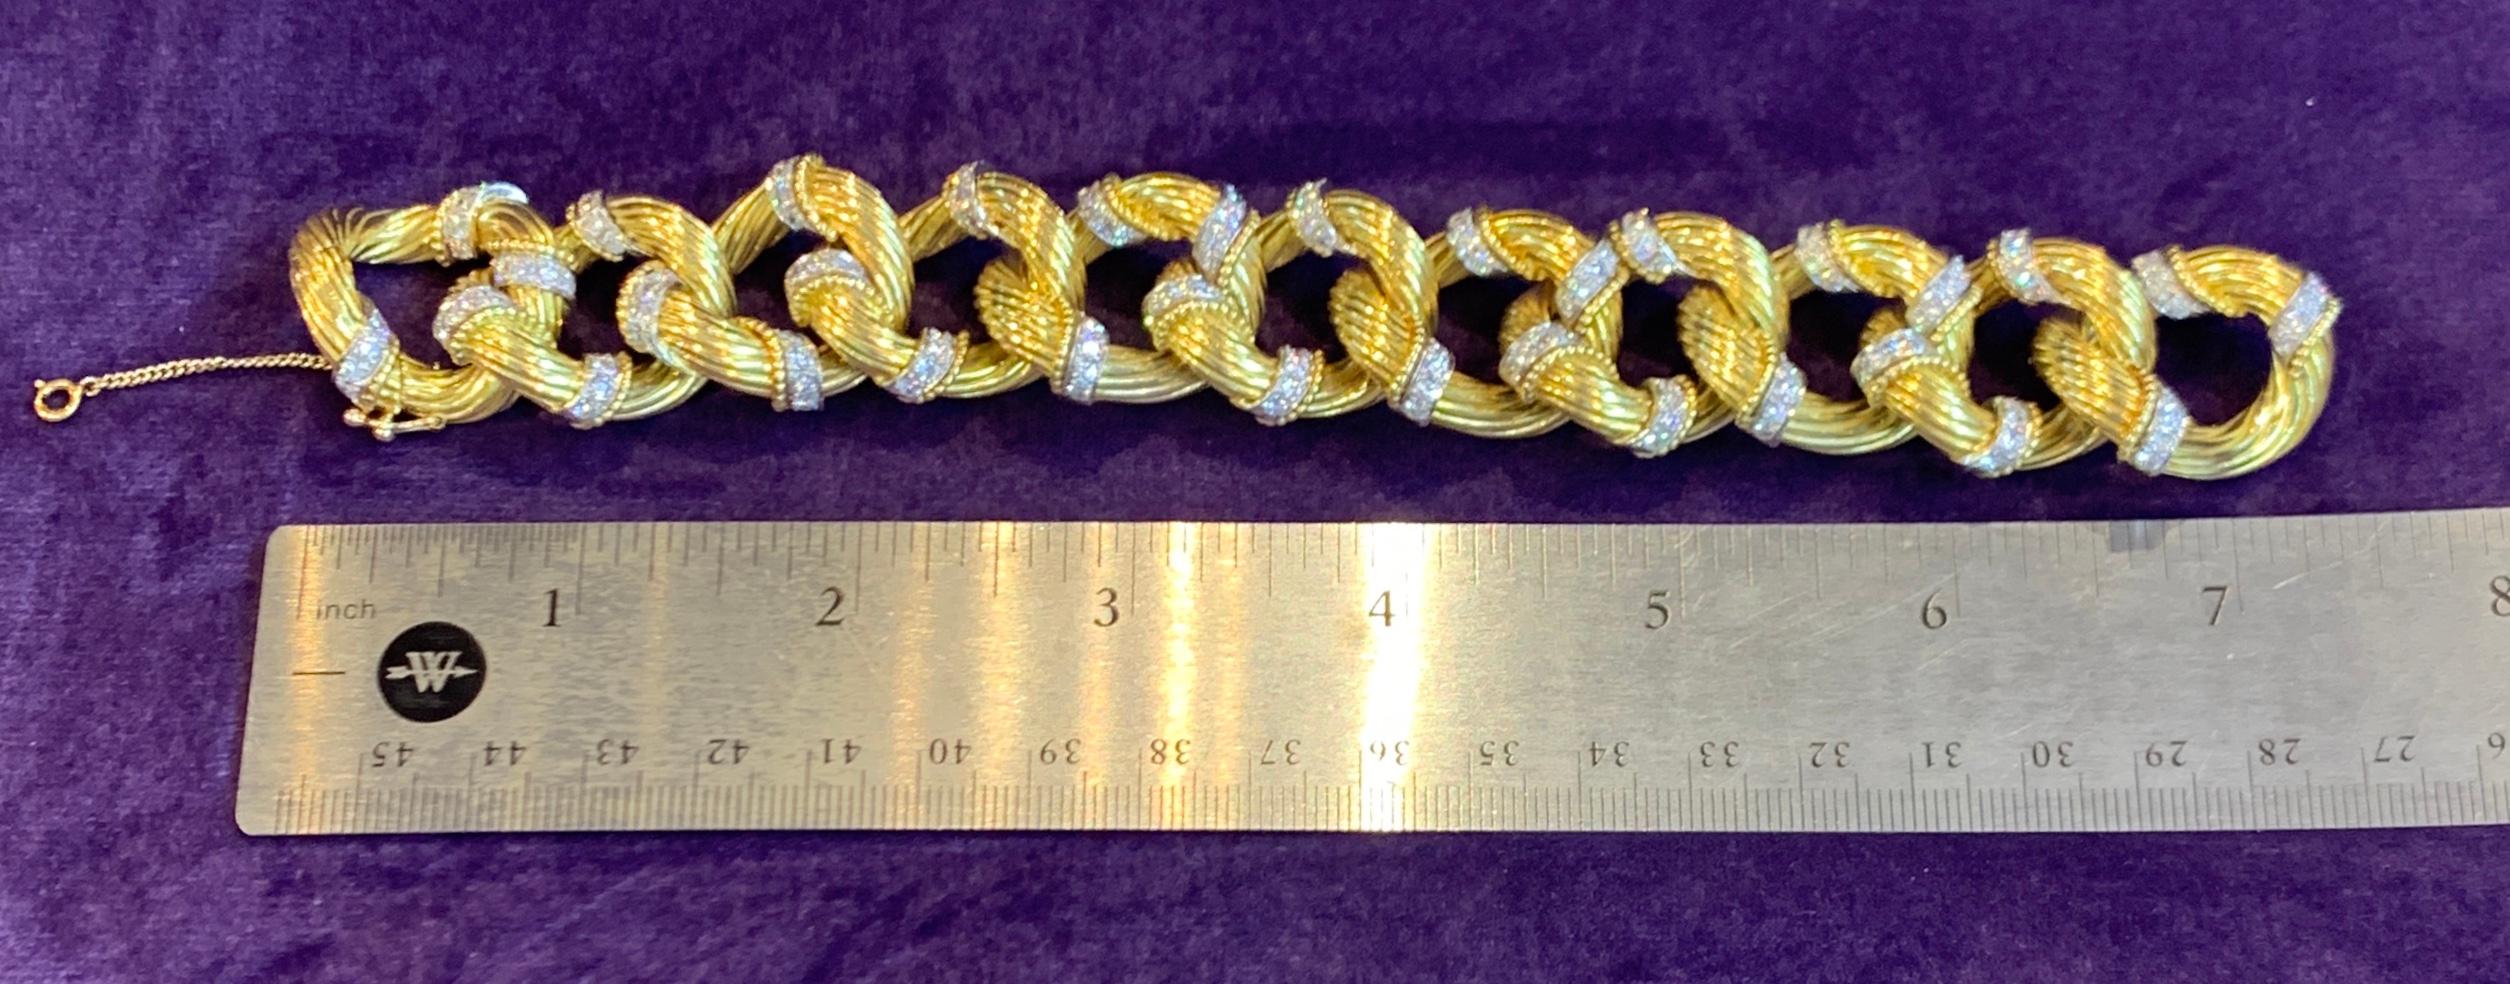 Women's Van Cleef & Arpels Gold and Diamond Link Bracelet